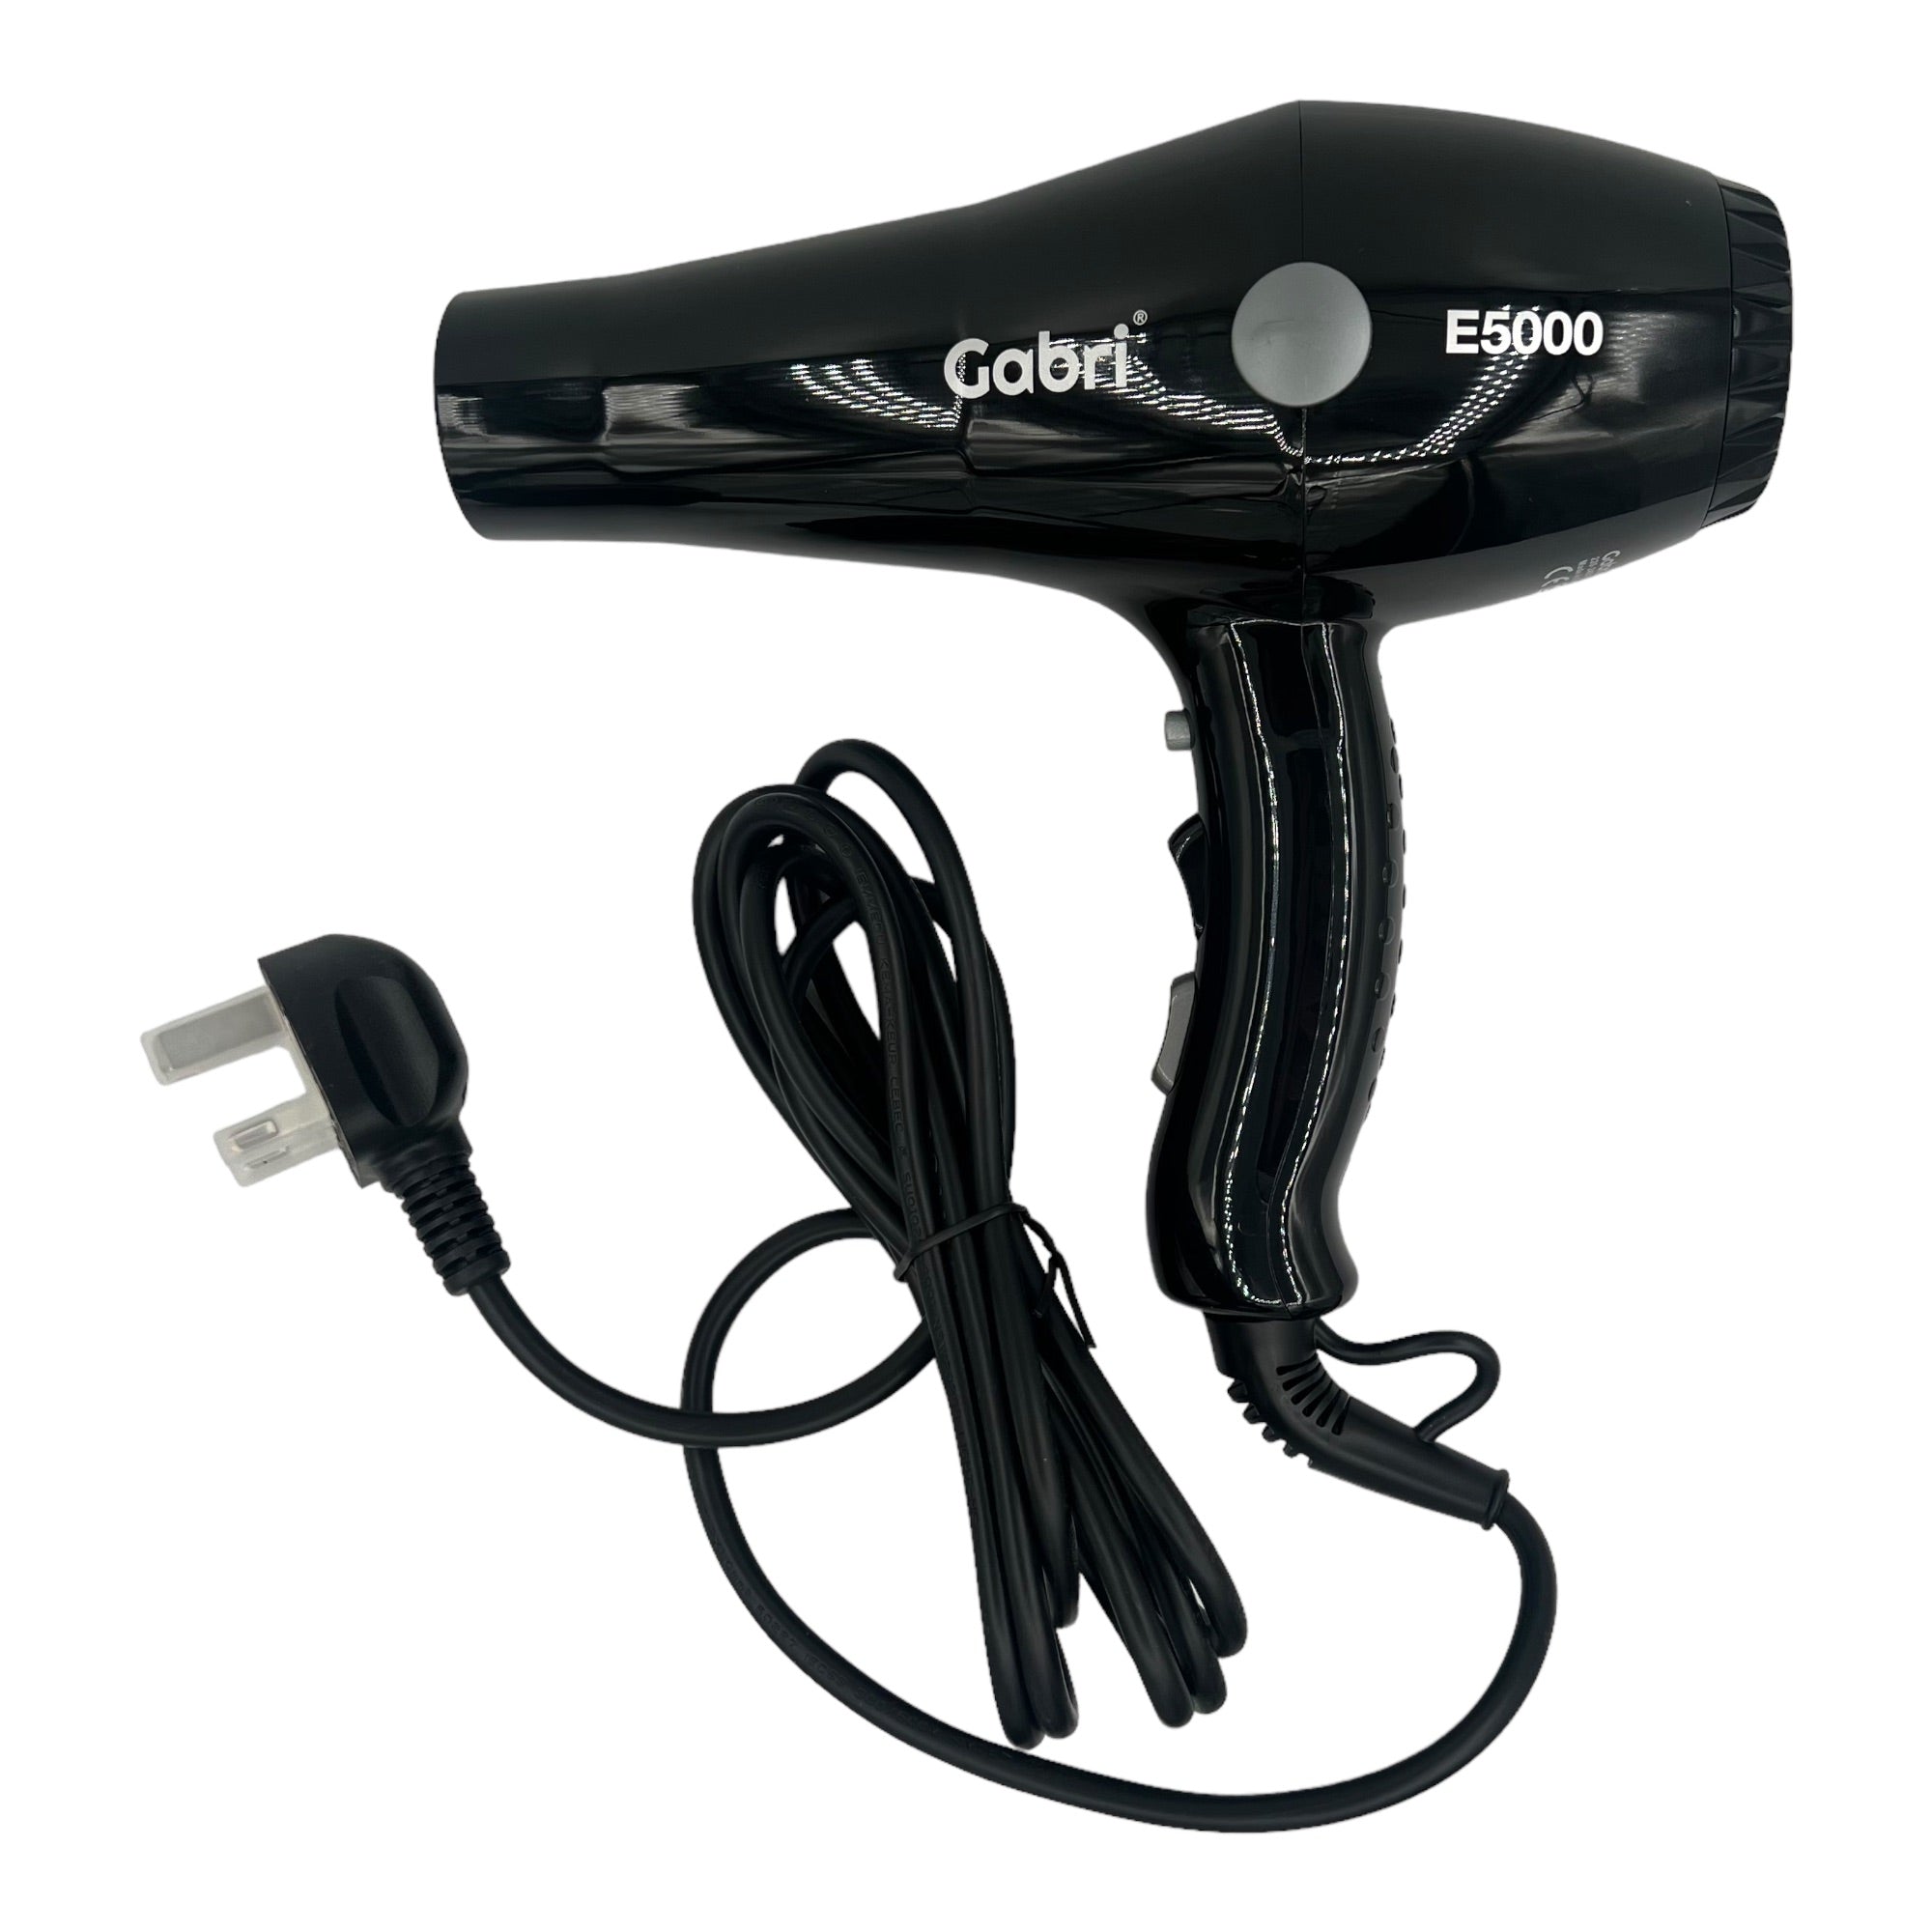 Gabri - Ionic Hair Dryer E5000 2400W